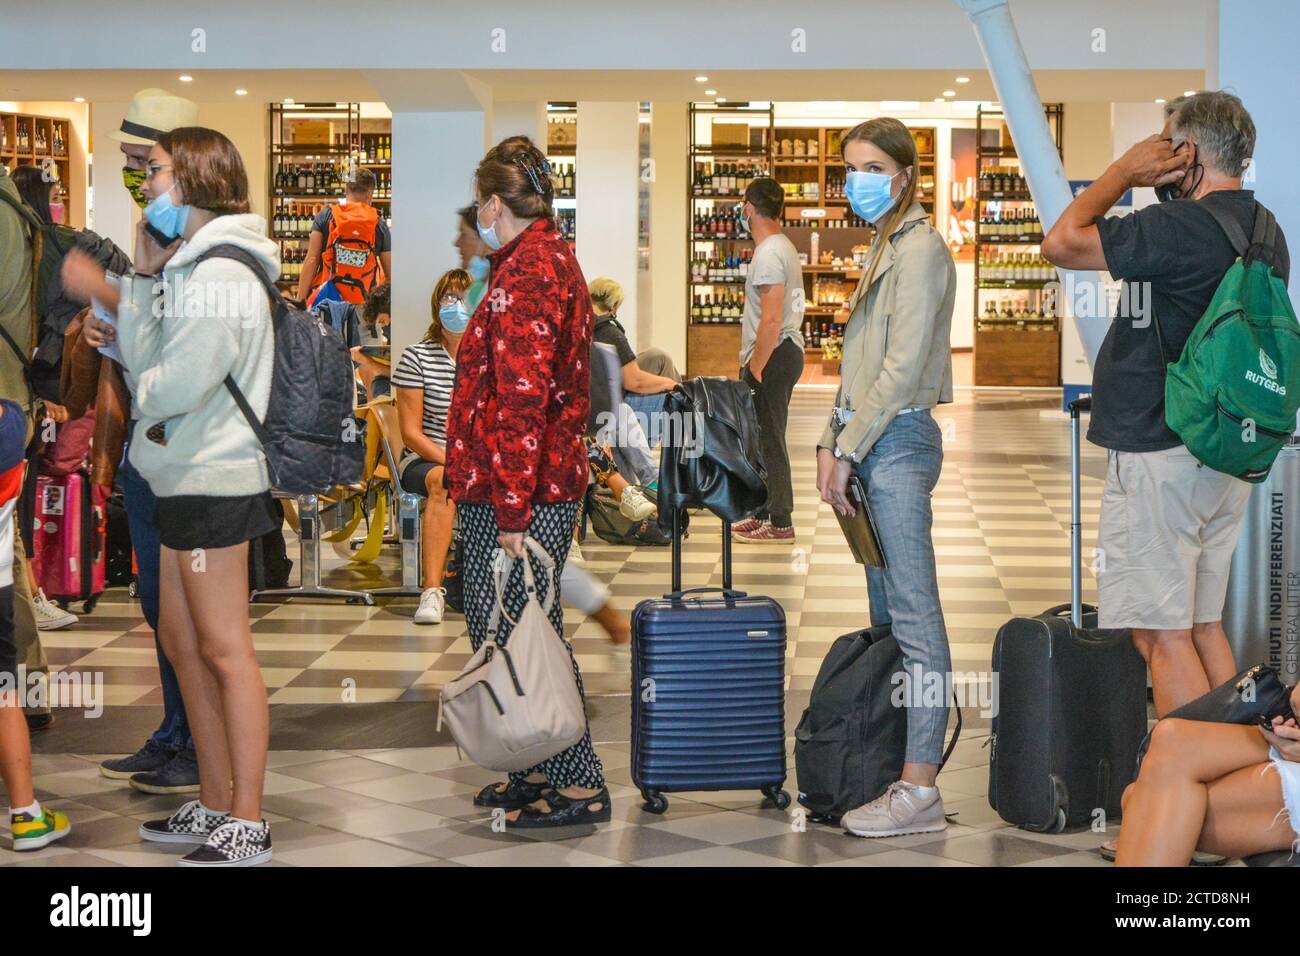 Eine Reihe von Passagieren mit covid Schutzmasken warten auf einen Ryanair-Flug am Terminal. Soziale Distanzierung und Reisen während einer Pandemie Stockfoto